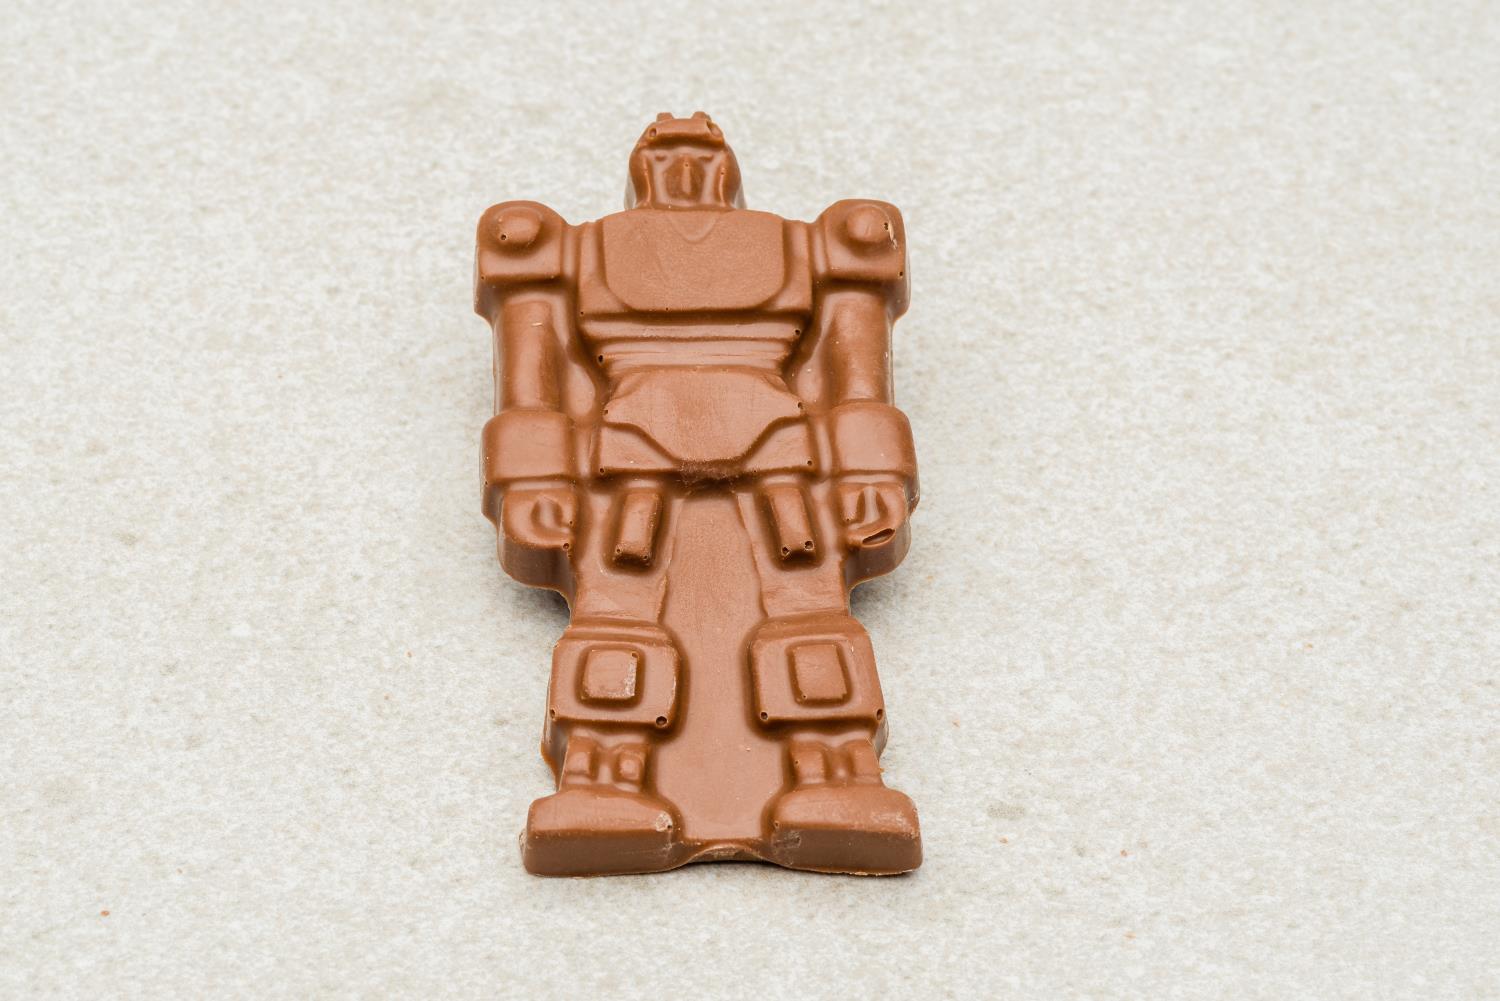 Robot melkesjokolade